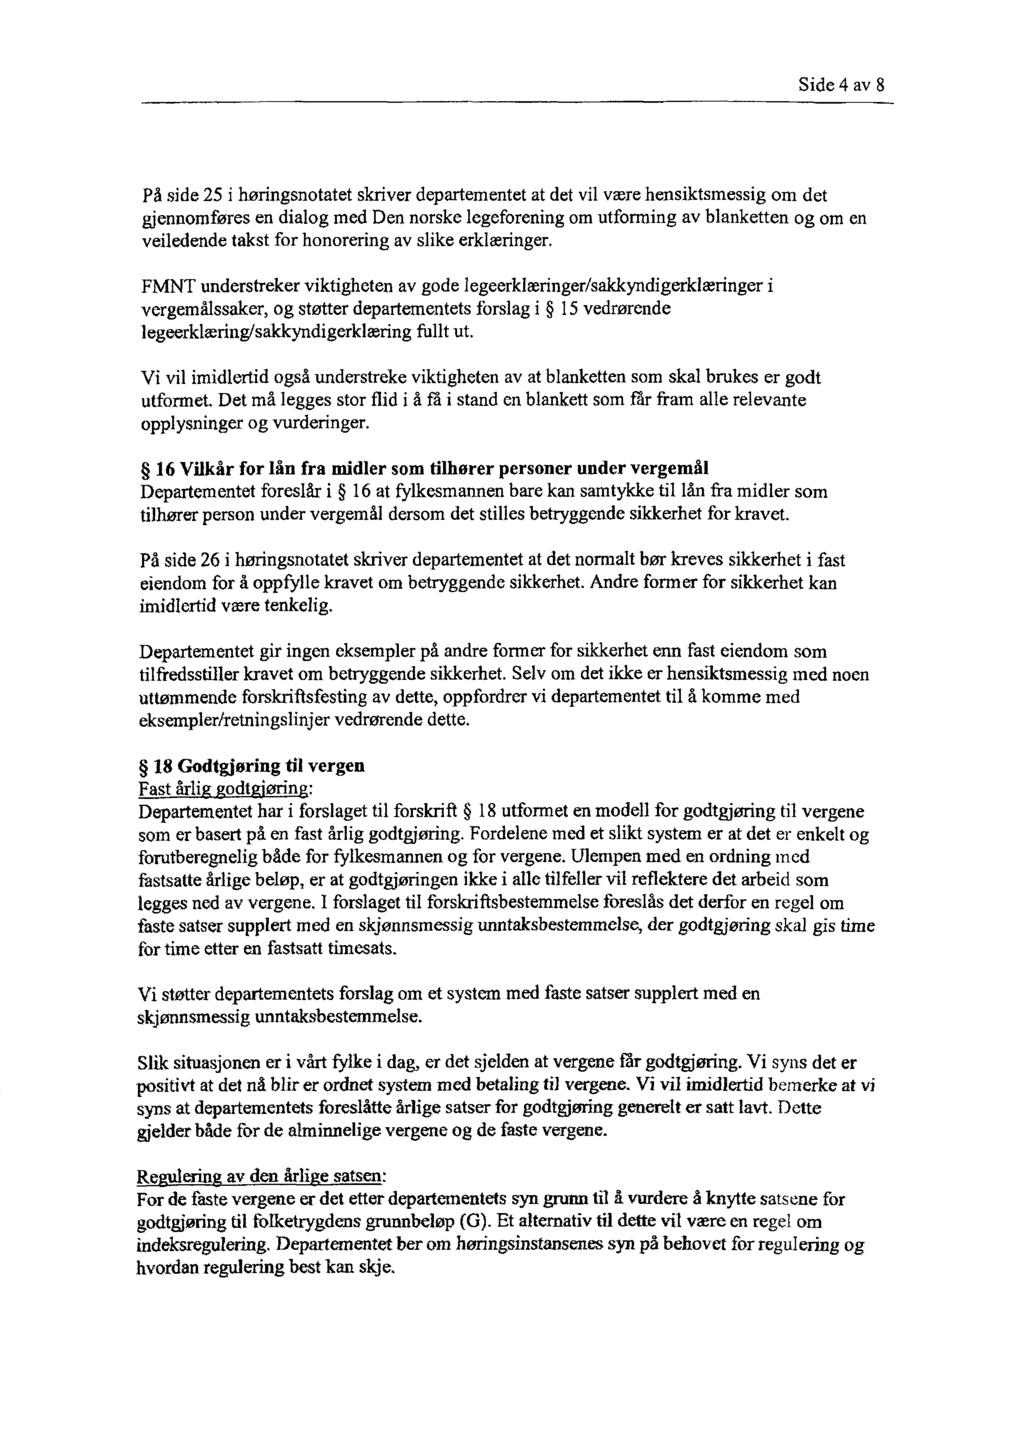 Side 4 av 8 På side 25 i høringsnotatet skriver departementet at det vil være hensiktsmessig om det gjennomføres en dialog med Den norske legeforening om utforming av blanketten og om en veiledende